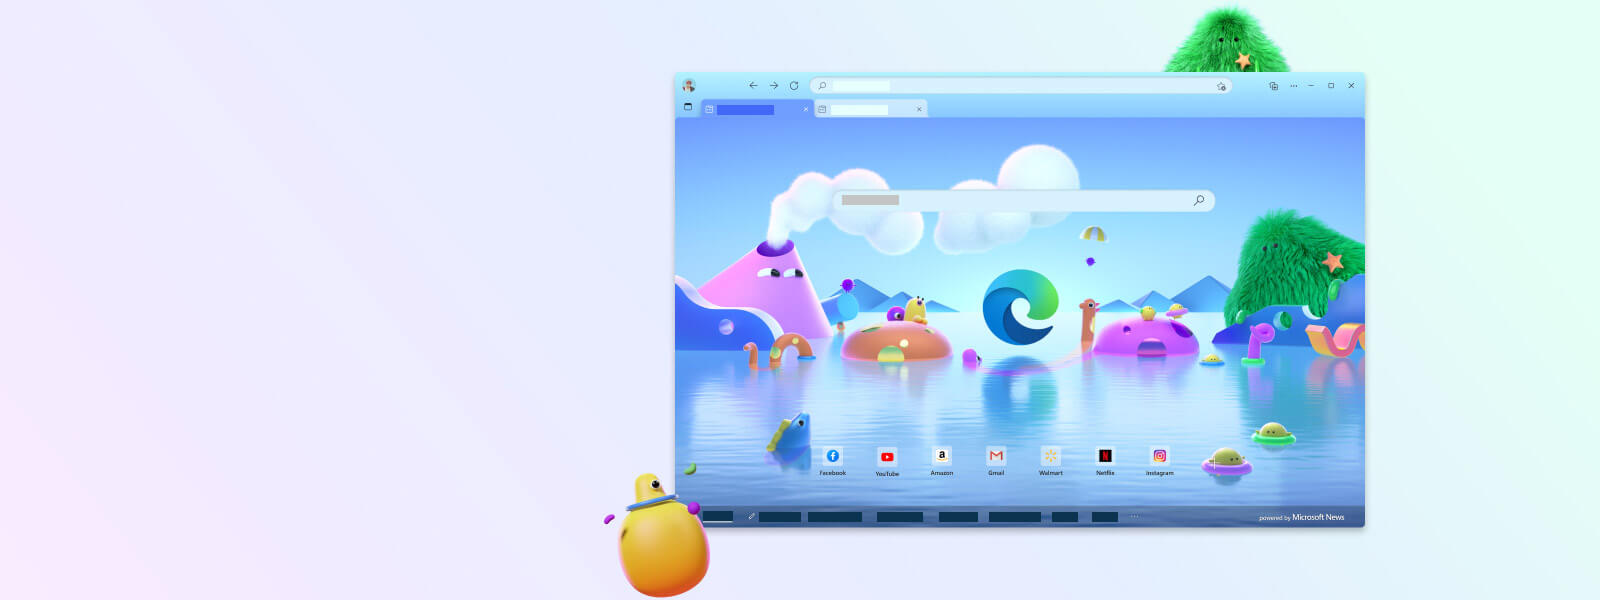 Главный экран браузера Microsoft Edge в детском режиме c изображением персонажей из различных мультфильмов